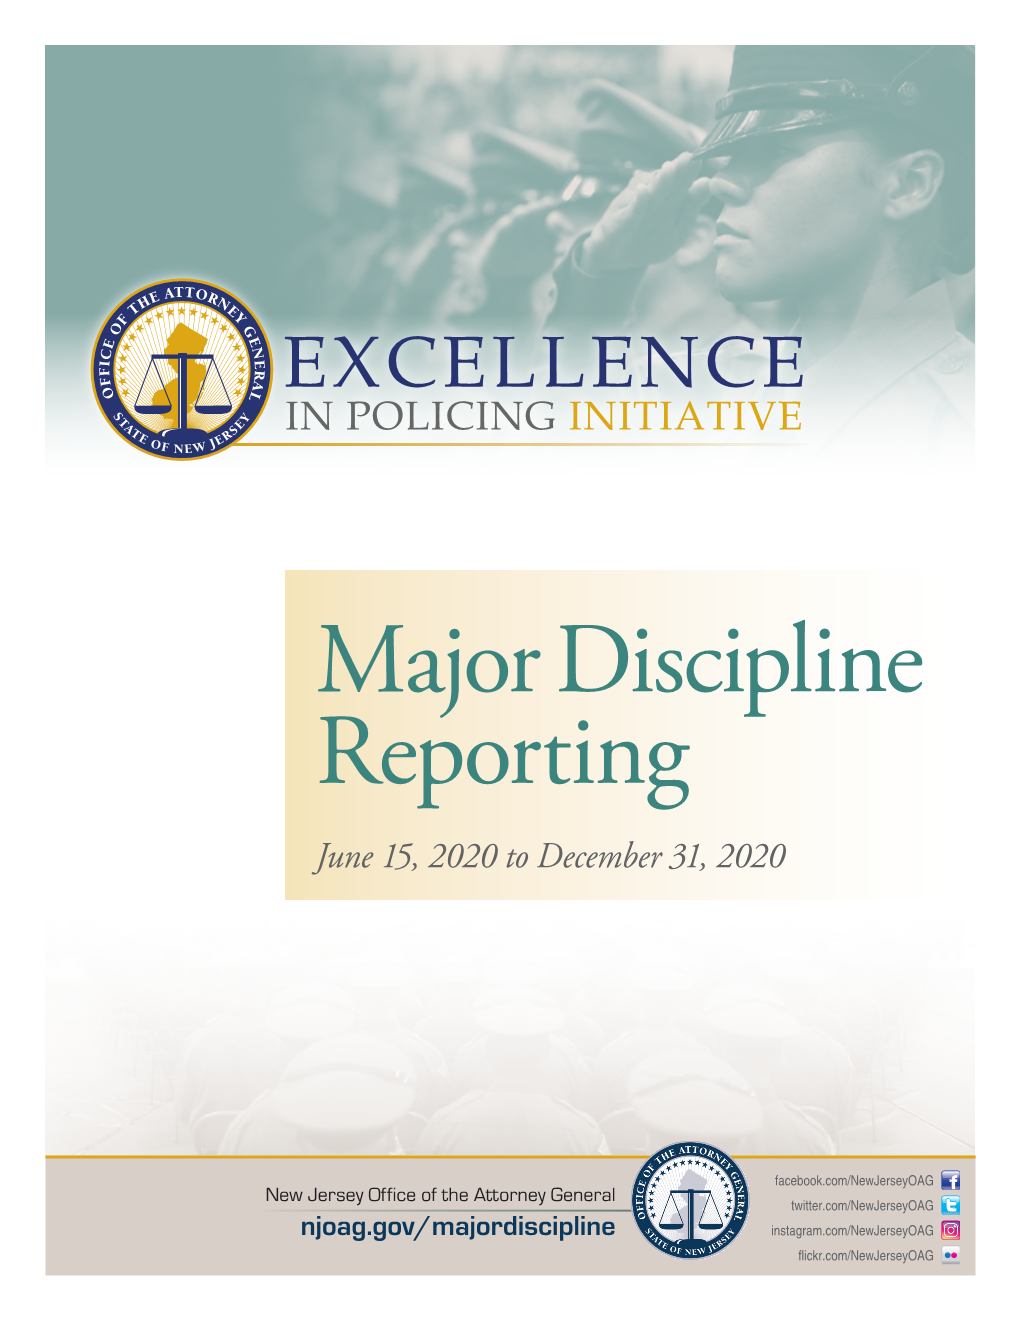 Major Discipline Reporting June 15, 2020 to December 31, 2020